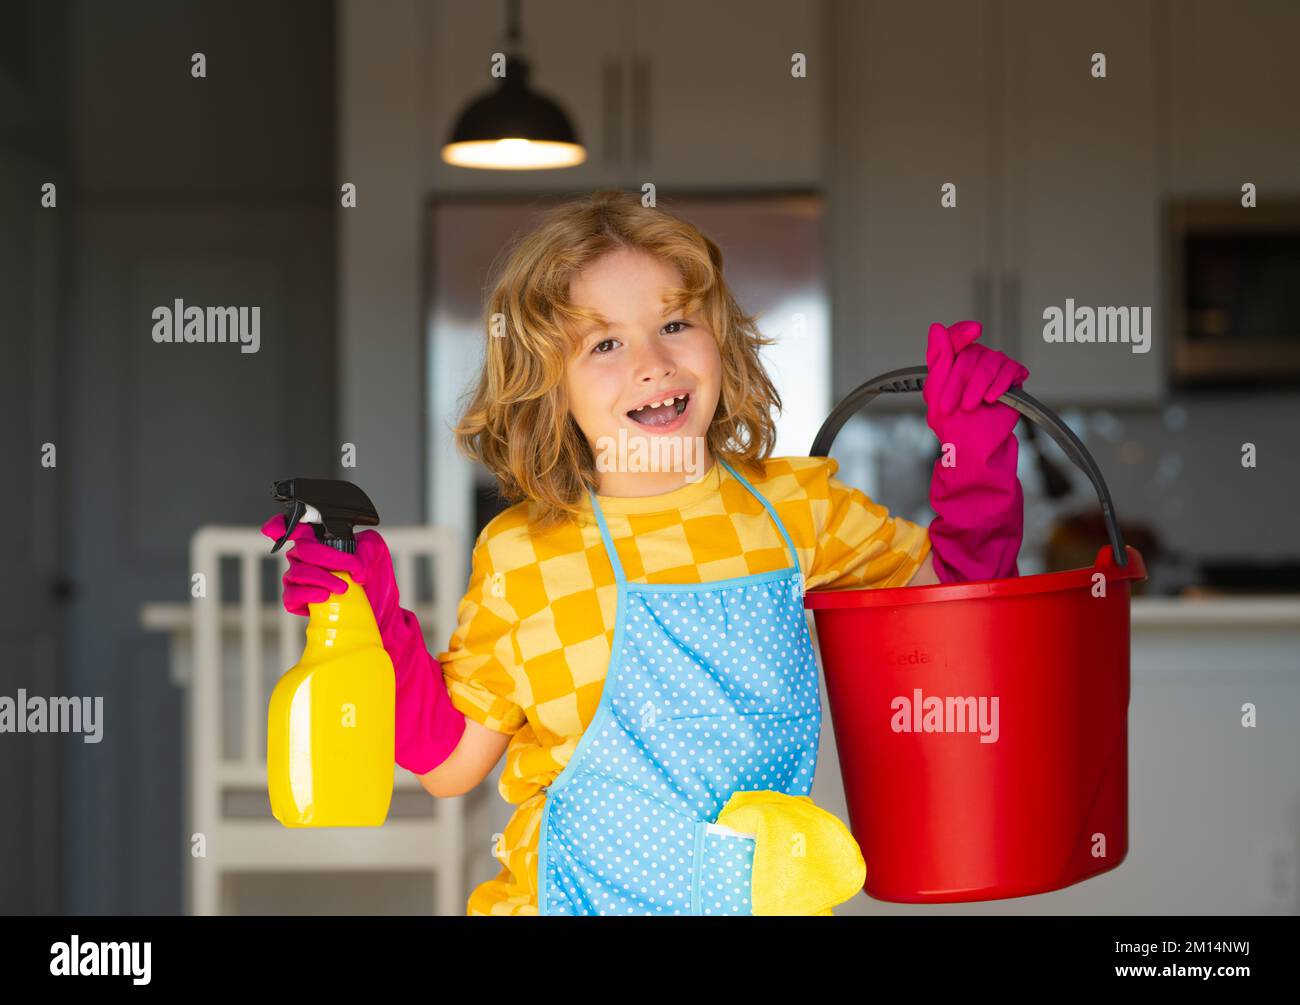 Un enfant nettoie à la maison. Nettoyage des enfants à l'aide d'une vadrouille pour faciliter les tâches ménagères. Petit garçon mignon balayant et nettoyant, sur le fond de la cuisine. Banque D'Images